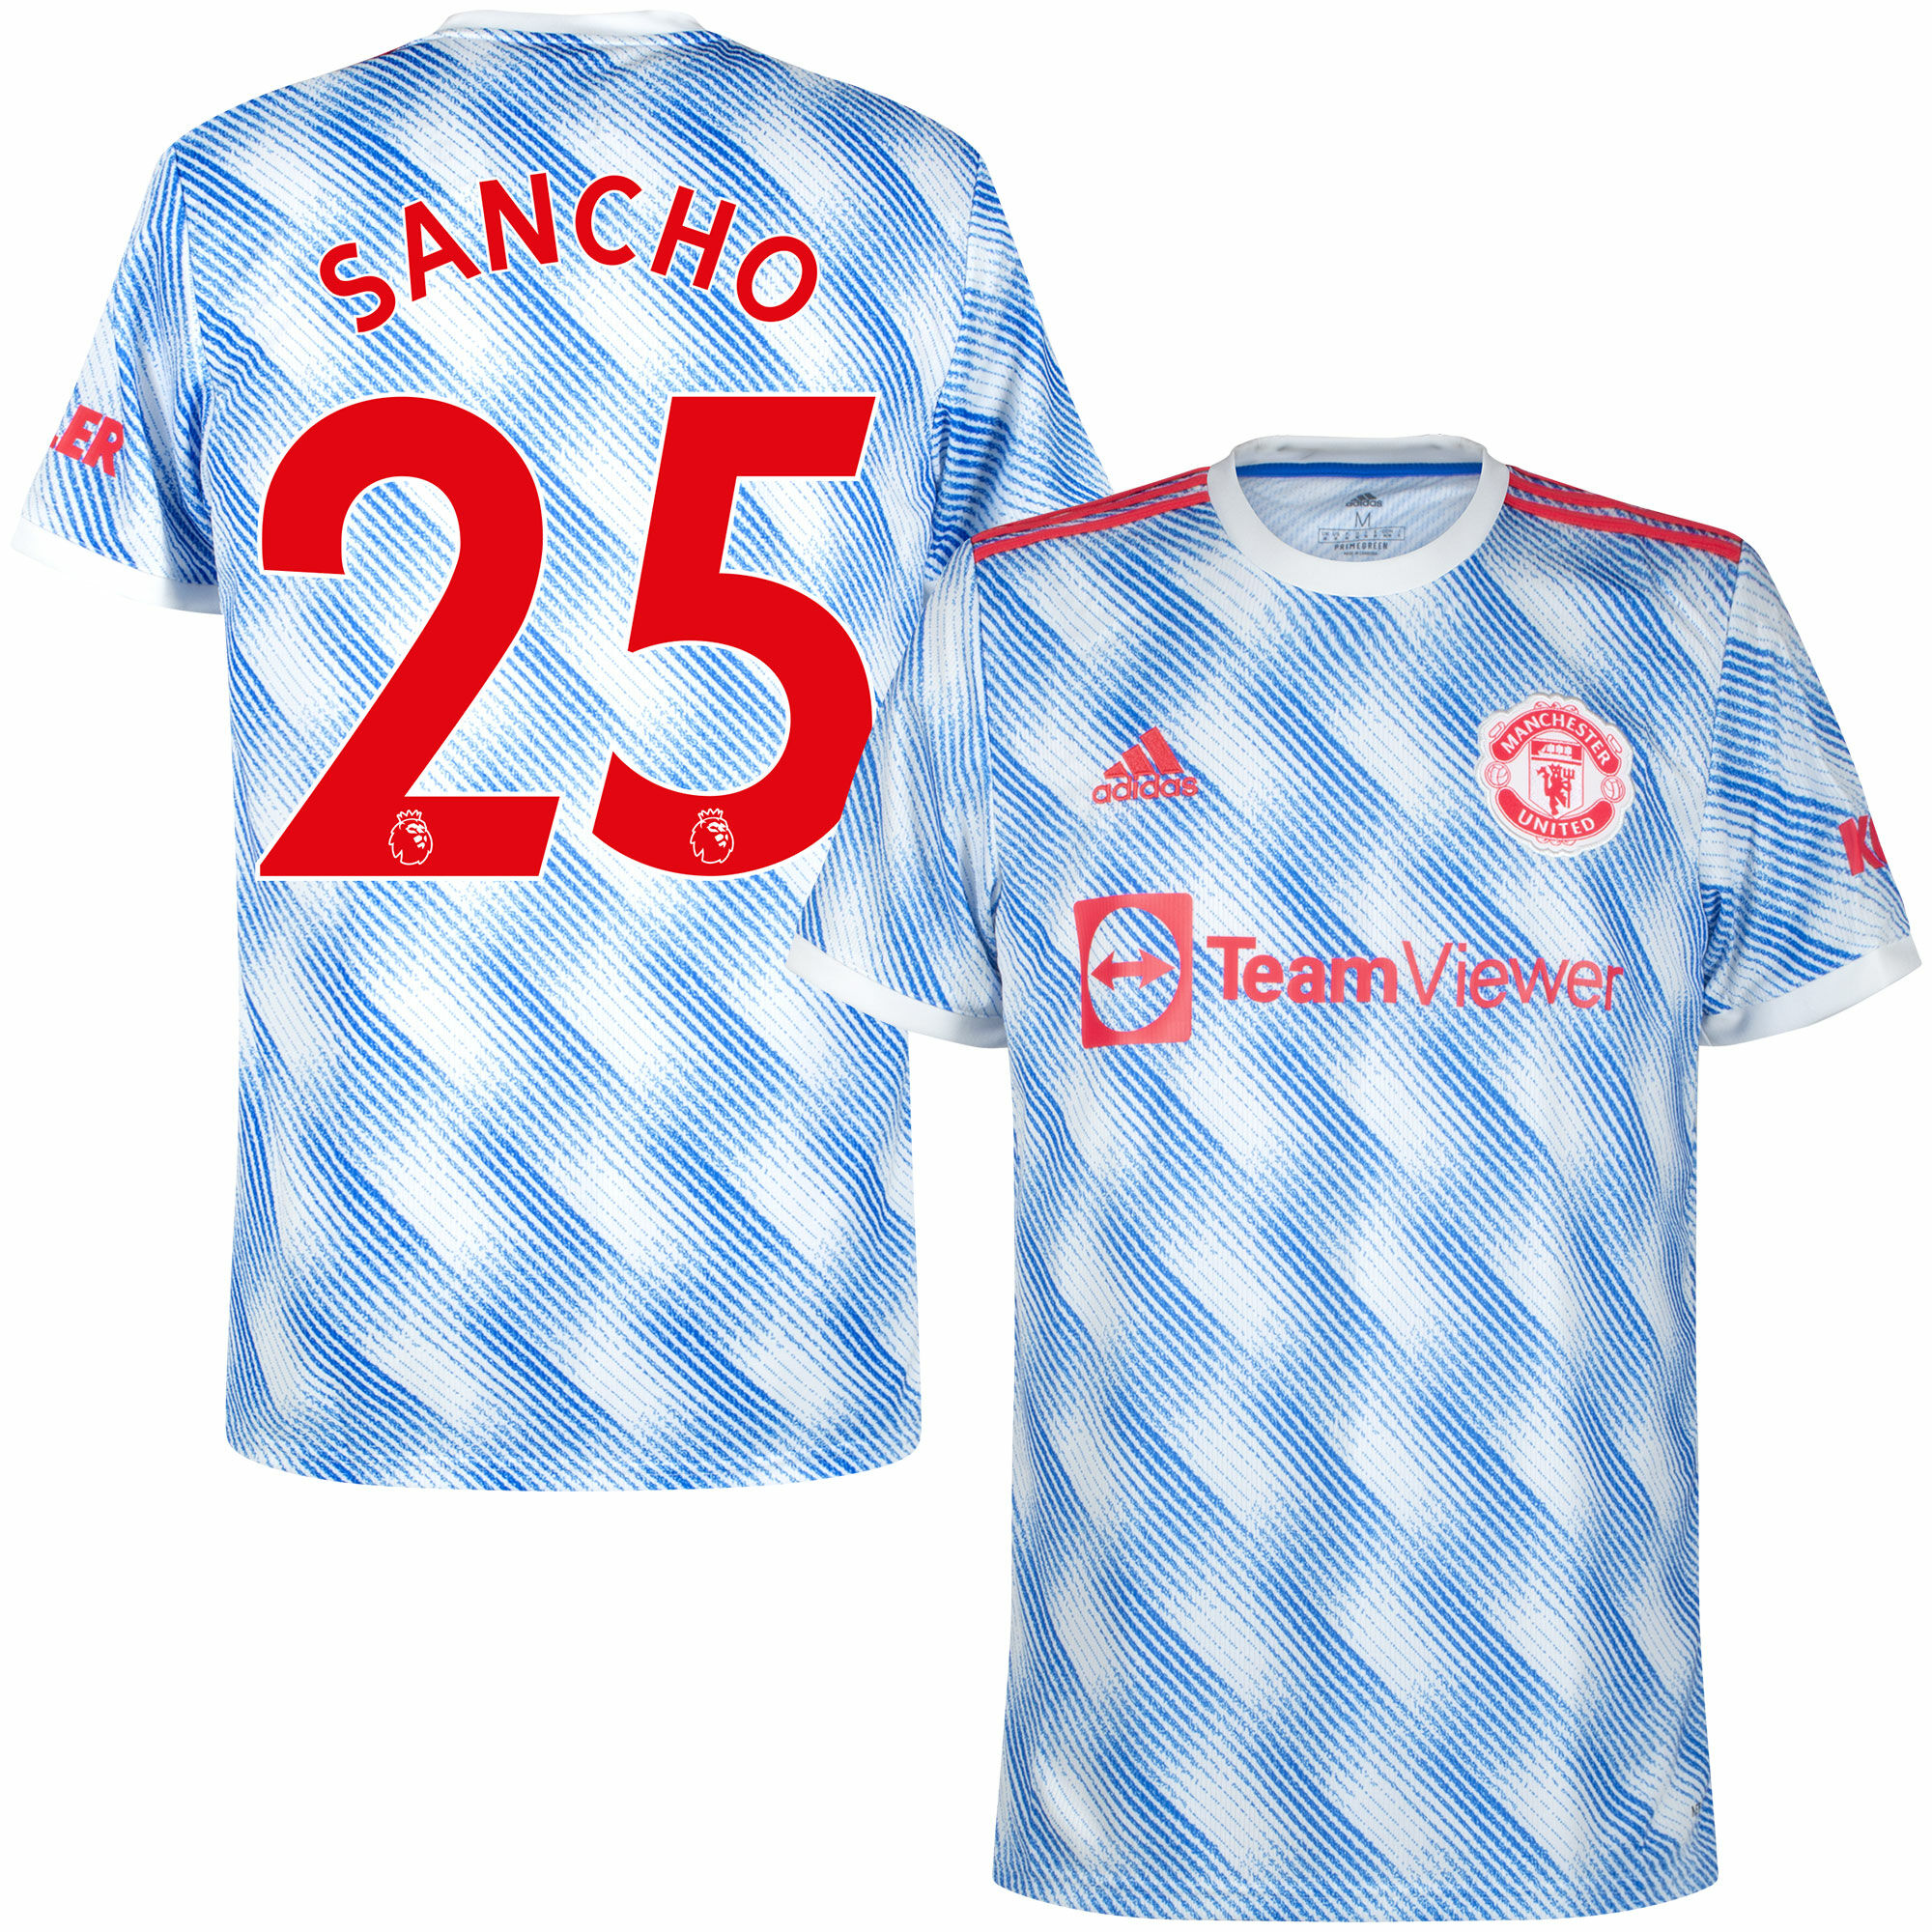 Manchester United - Dres fotbalový - Premier League, sezóna 2021/22, bílý, Jadon Sancho, číslo 25, venkovní